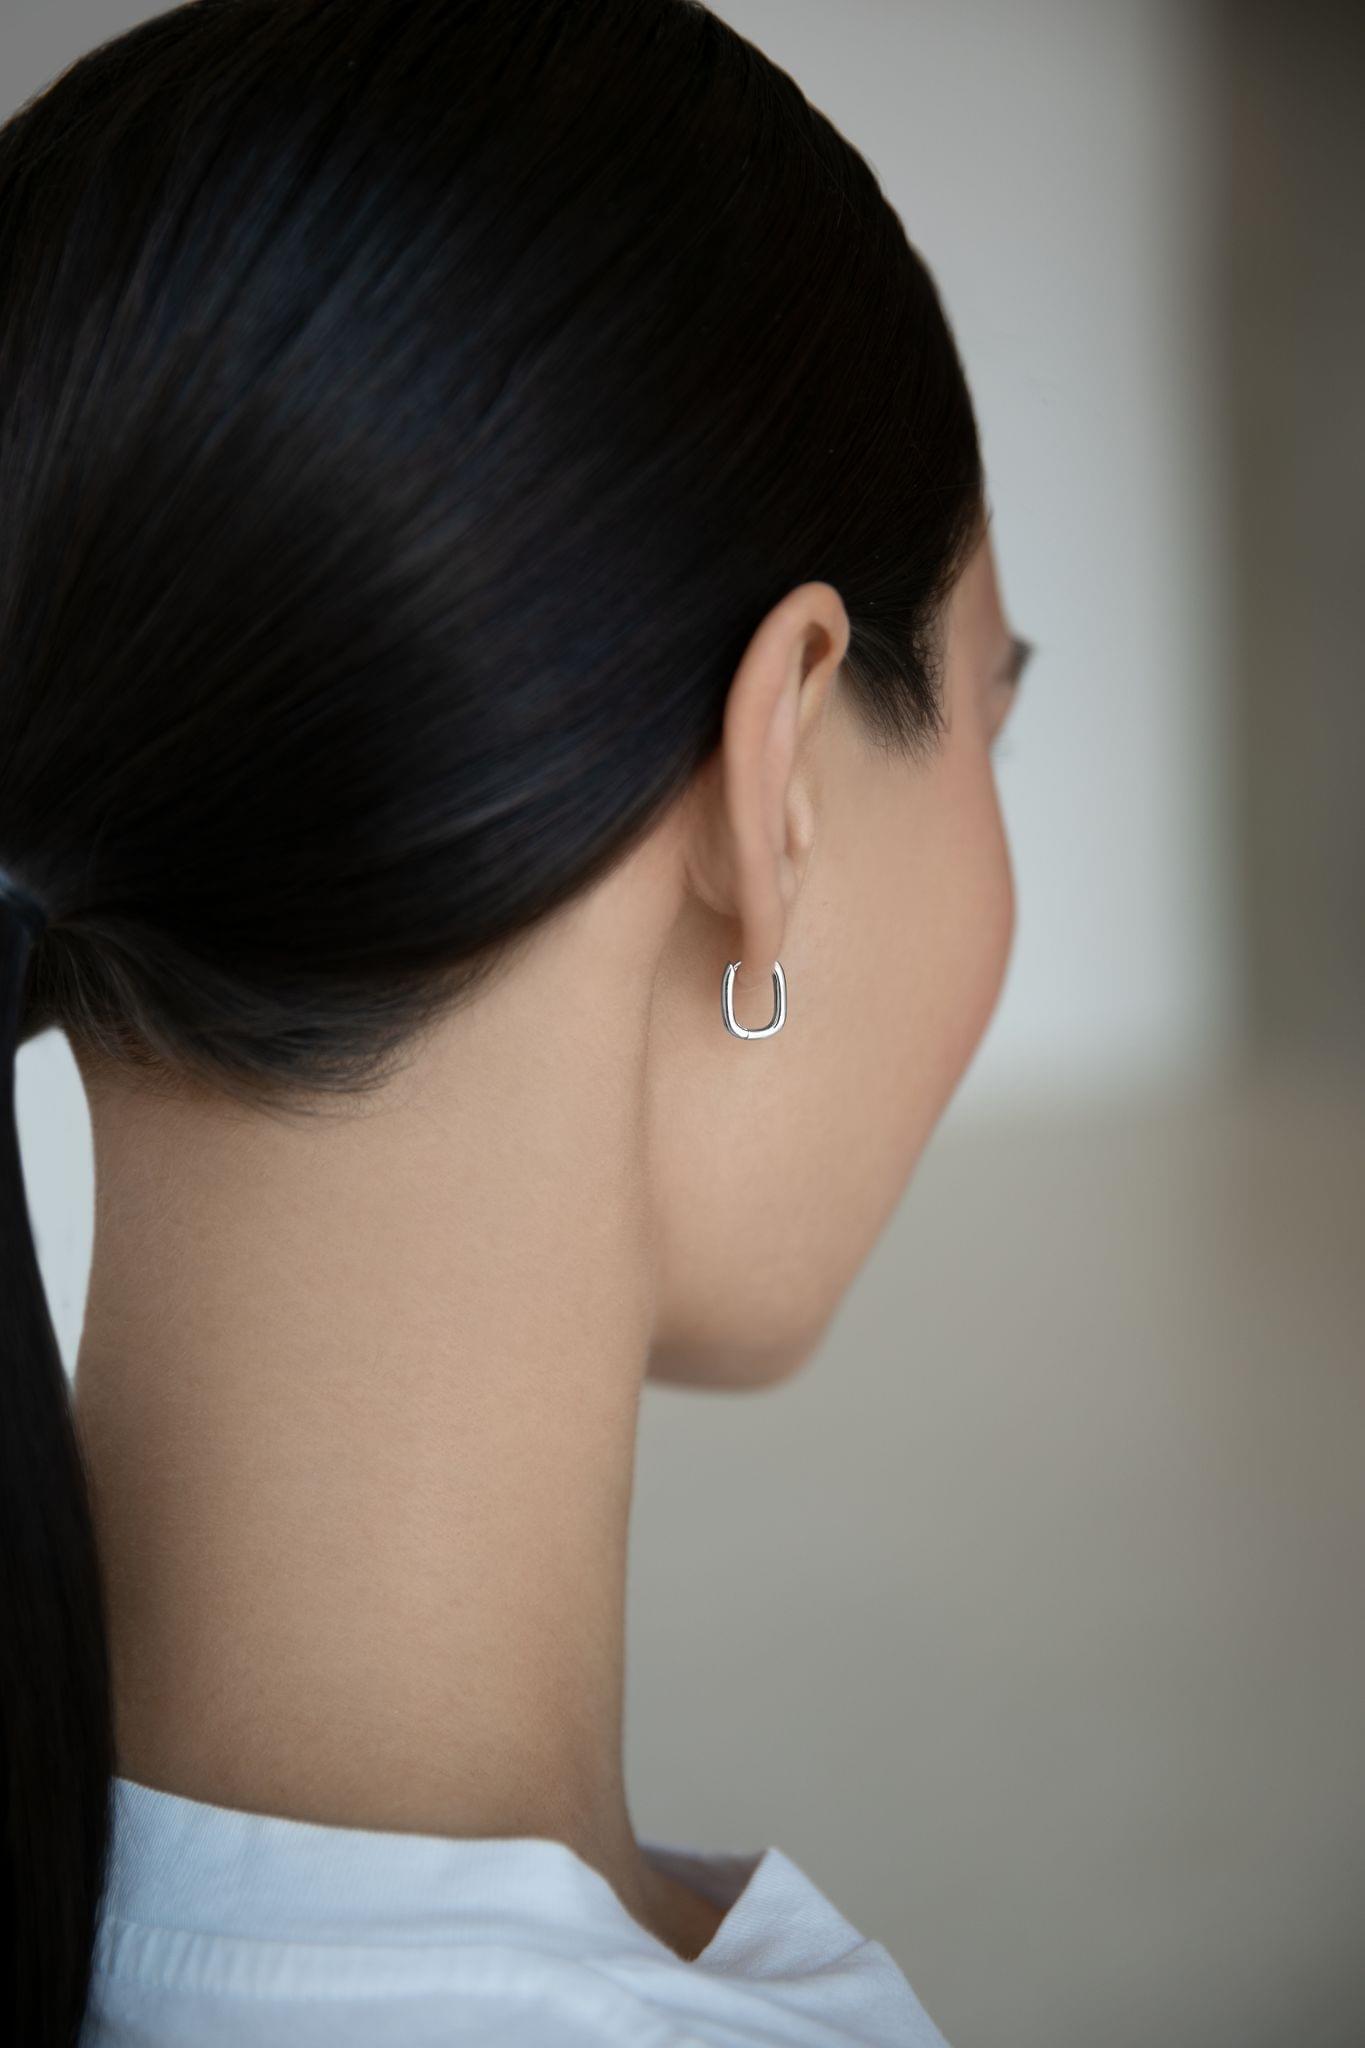 Women's Silver Earrings 12mm - ER181-12